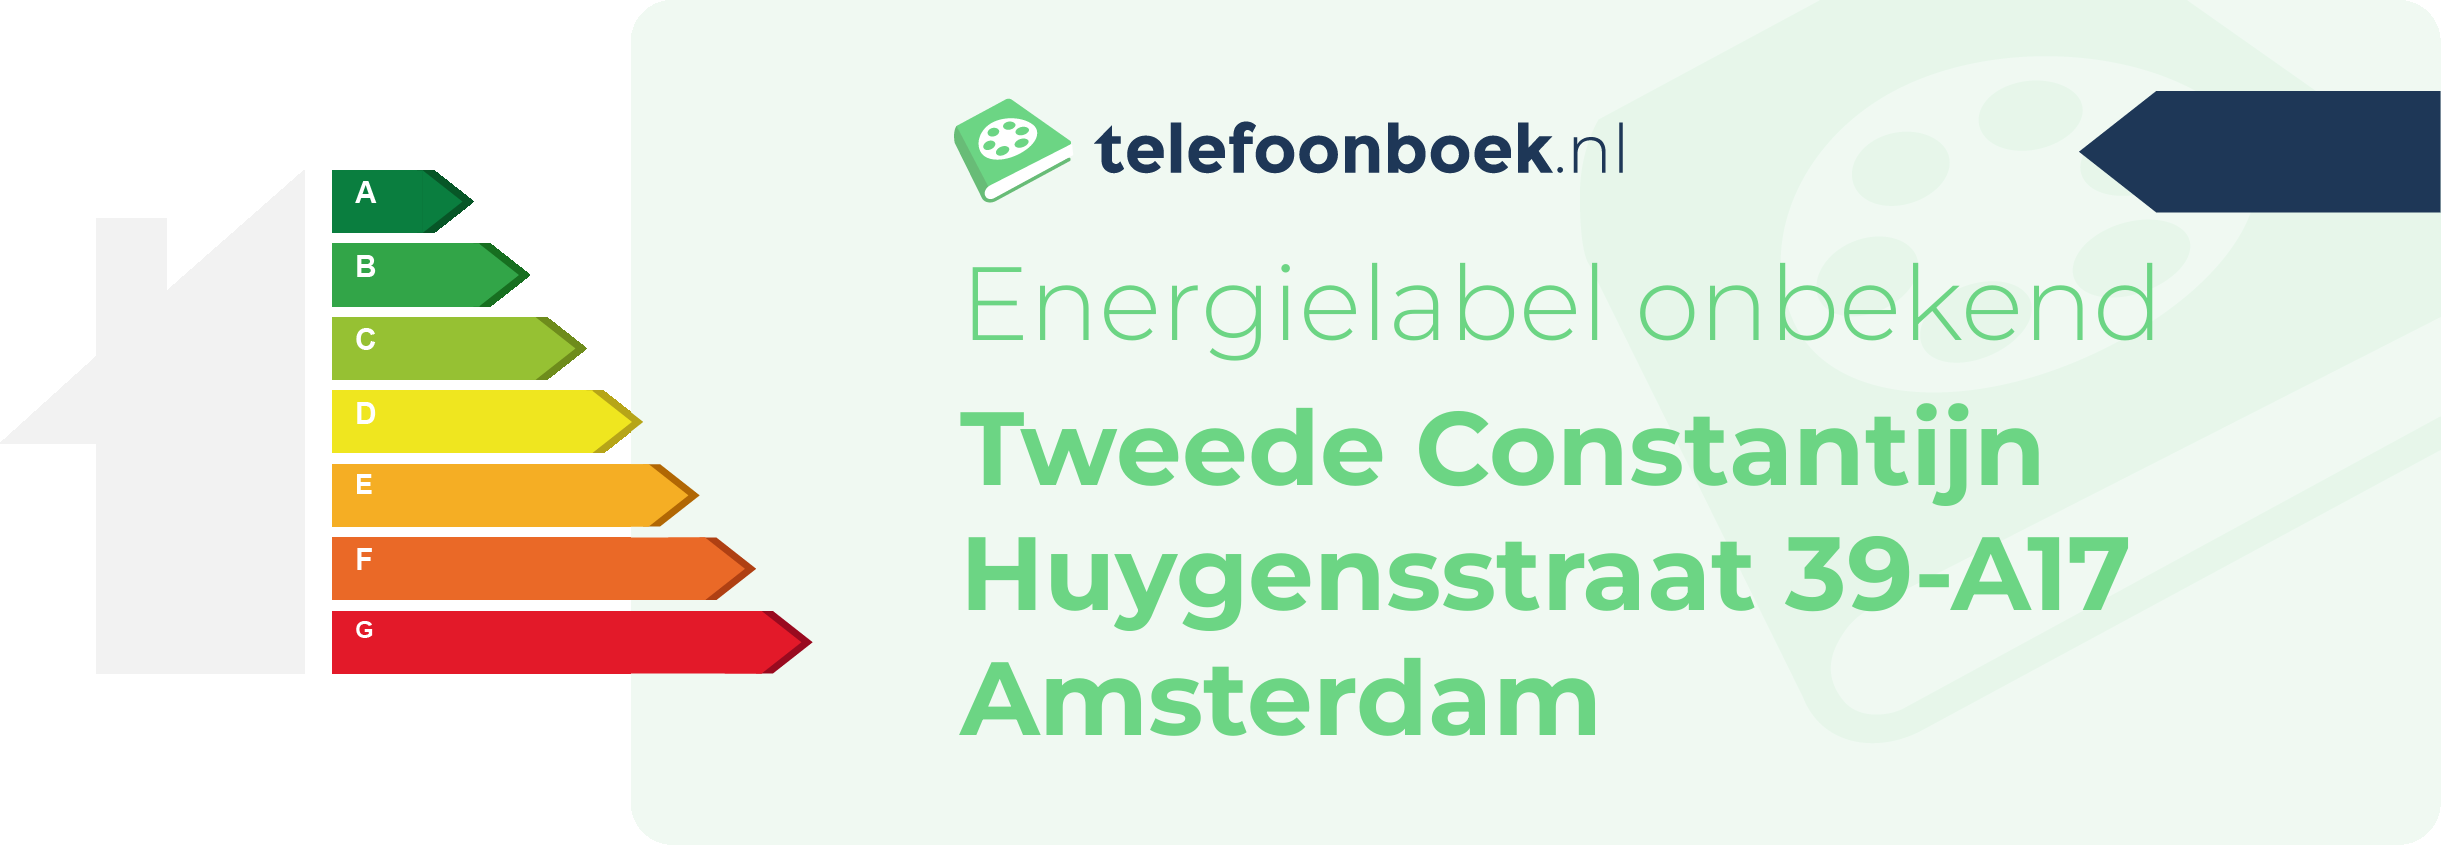 Energielabel Tweede Constantijn Huygensstraat 39-A17 Amsterdam